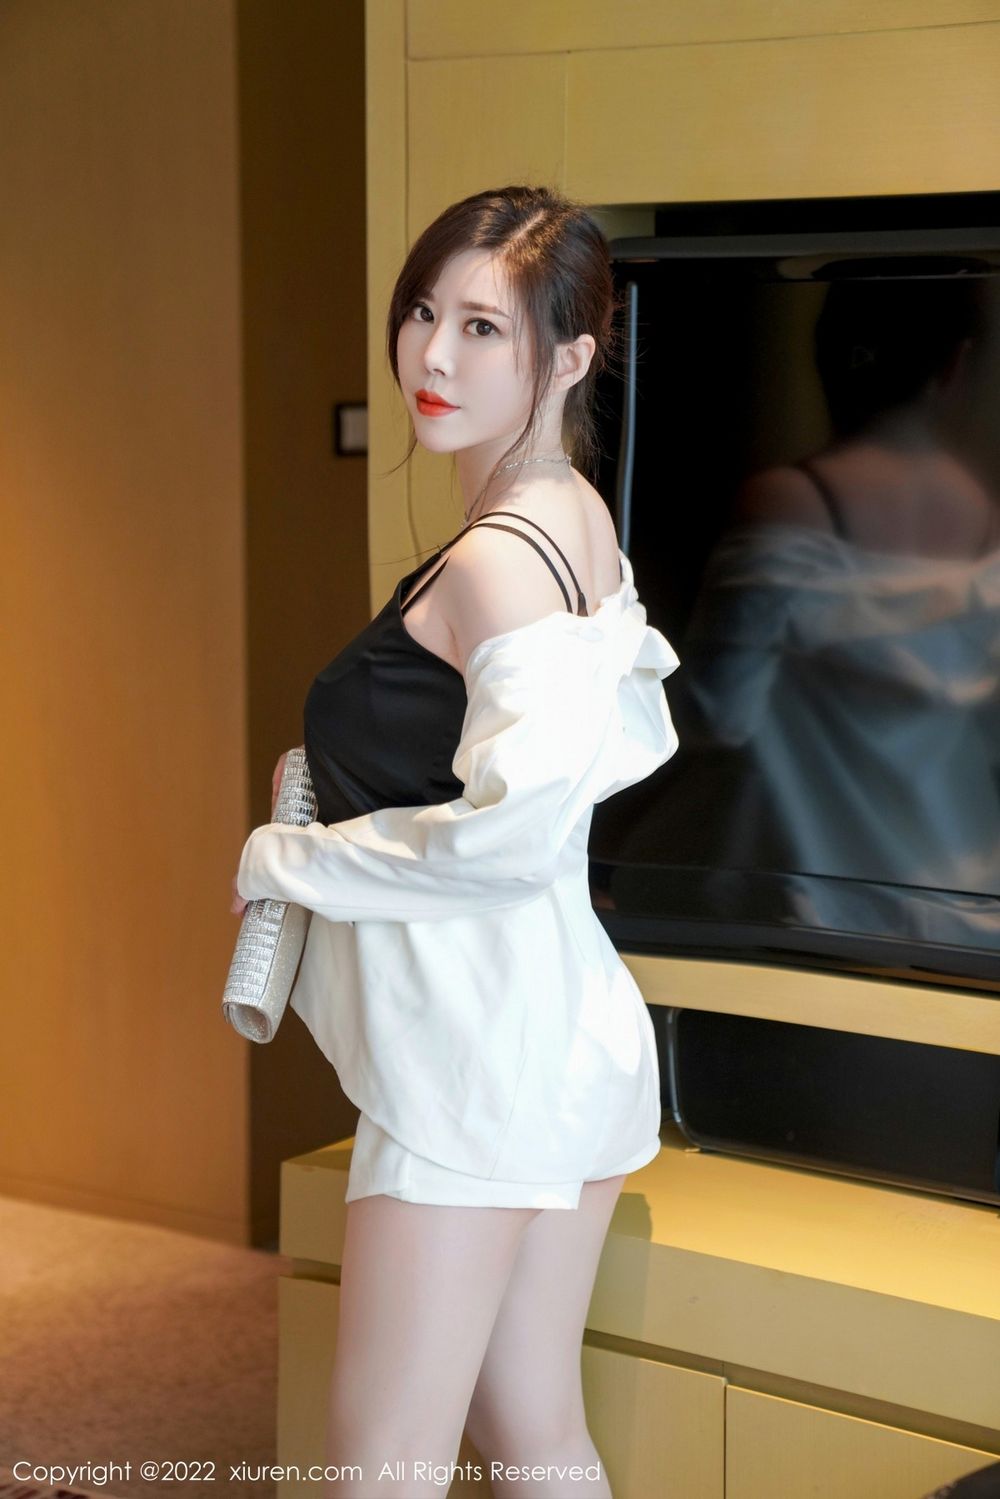 美女模特白茹雪职场OL搭配白色短裙熟女气息性感写真